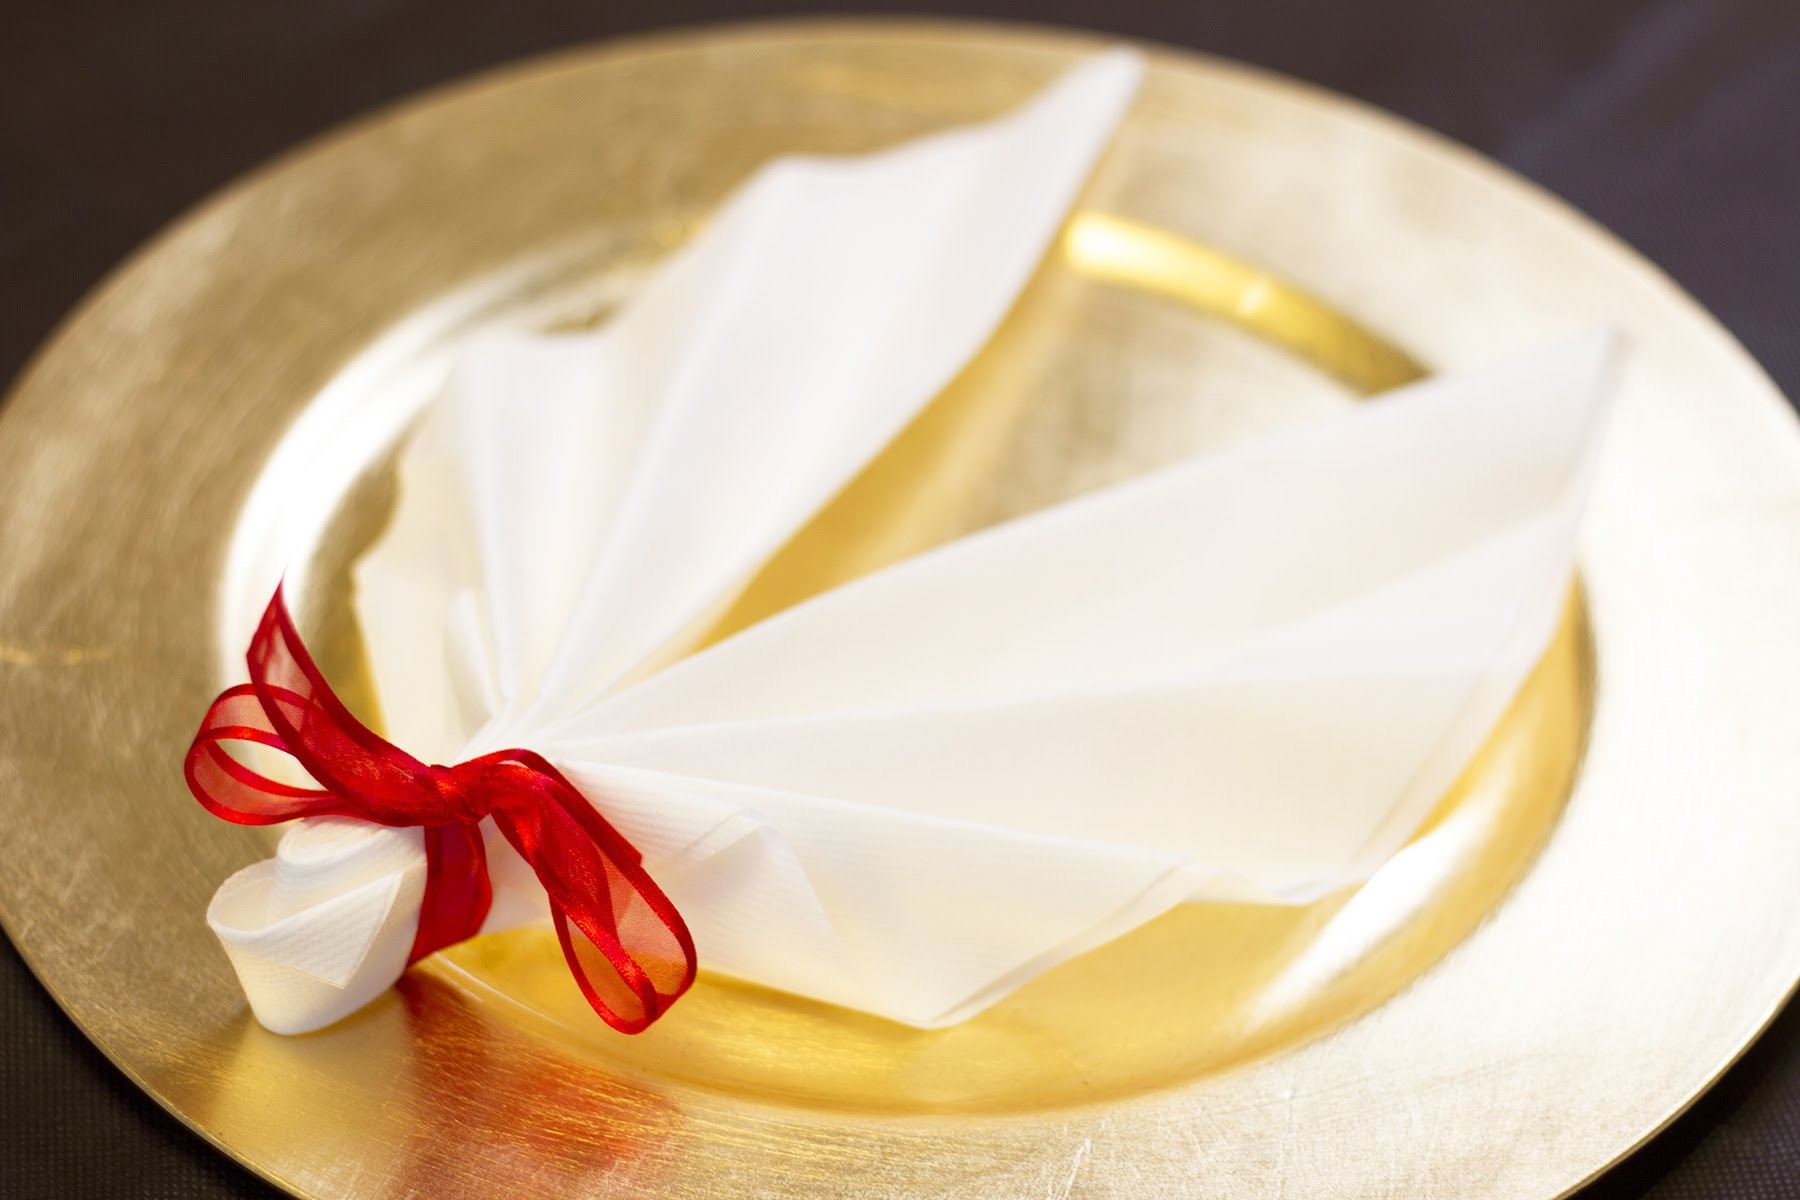 DIY Noël : Pliage de serviette en forme d'ailes d'ange